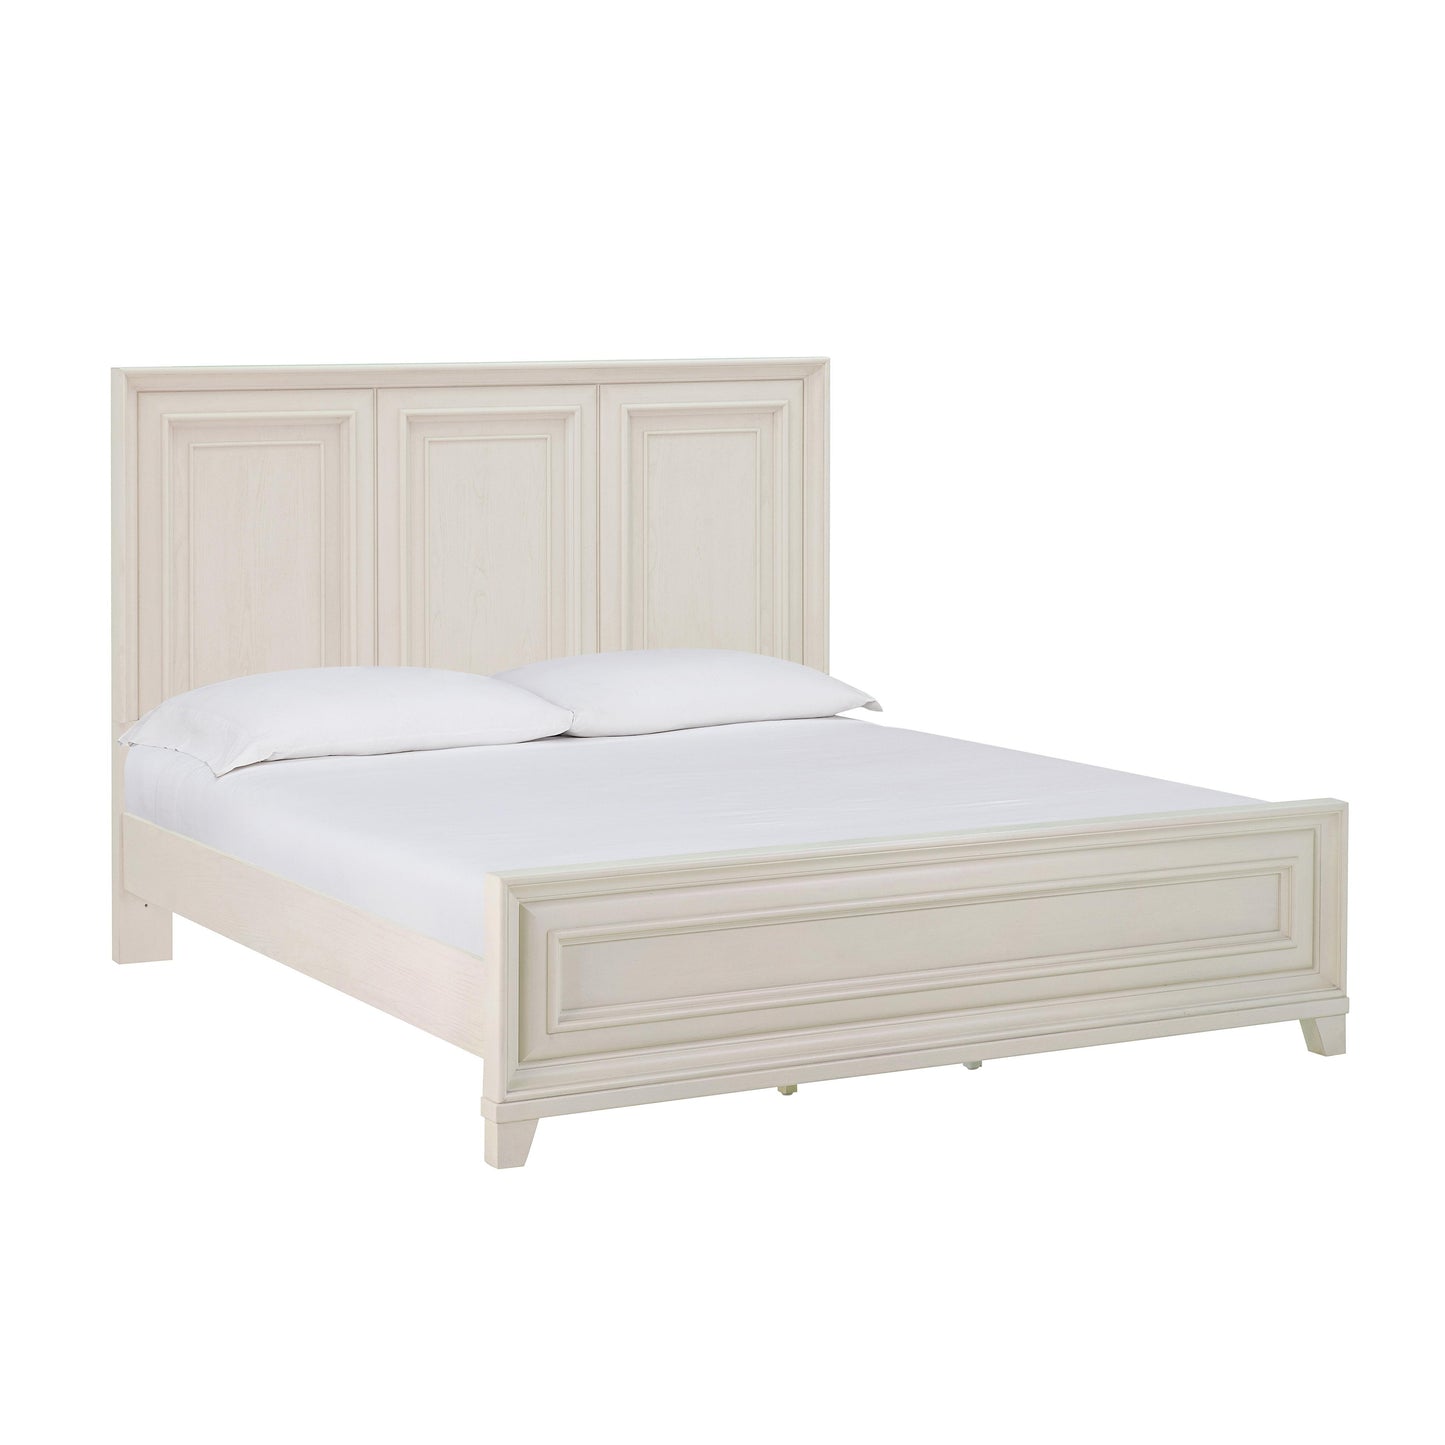 Tov Furniture Montauk Weathered White King Panel Bed